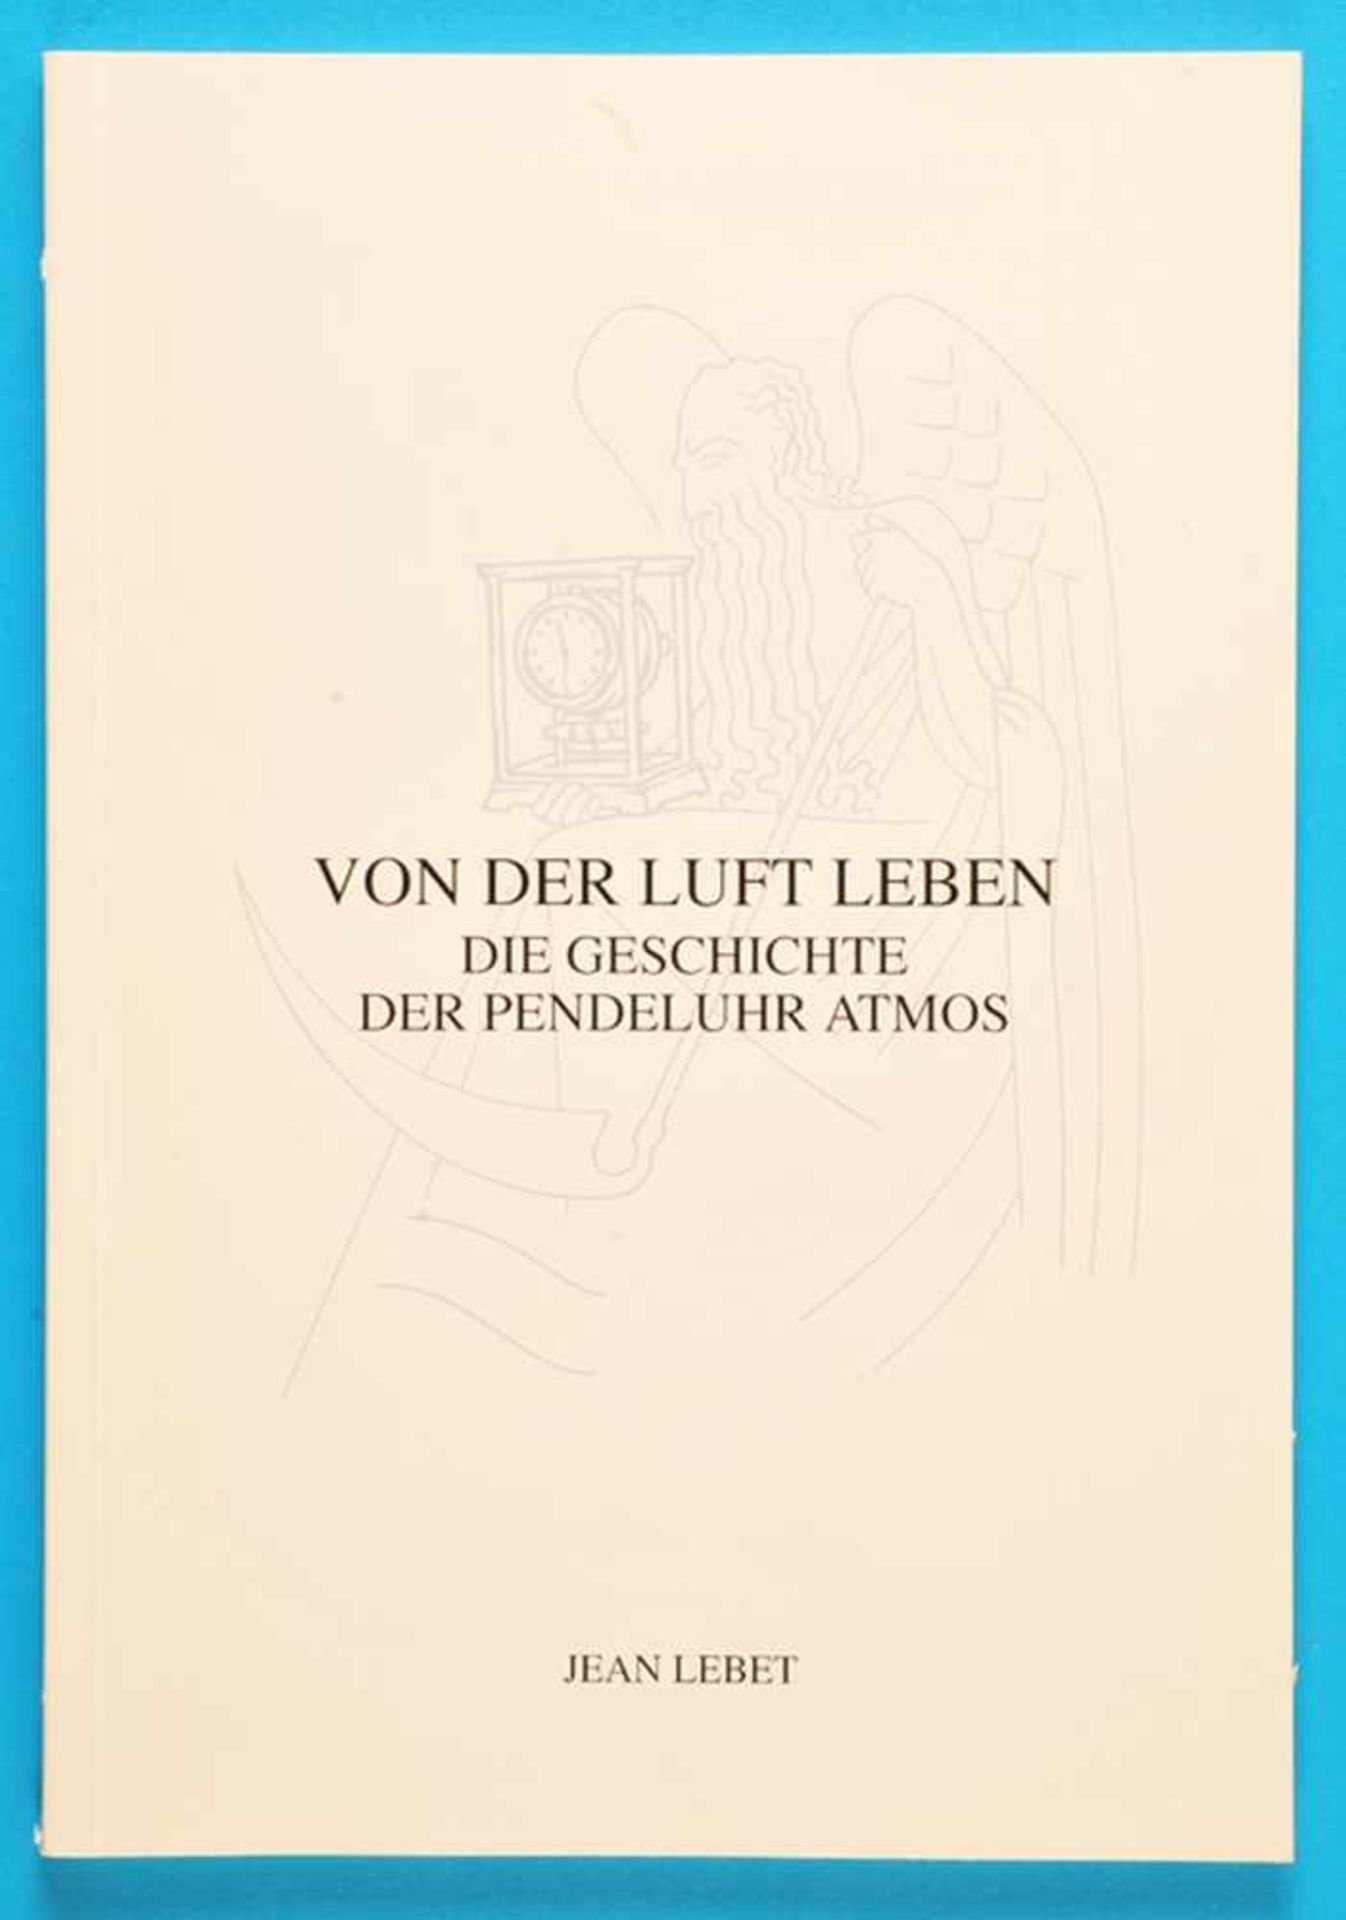 Jean Lebet, Von der Luft leben, Die Geschichte der Pendeluhr Atmos, Jaeger-LeCoultre, 1997, 88